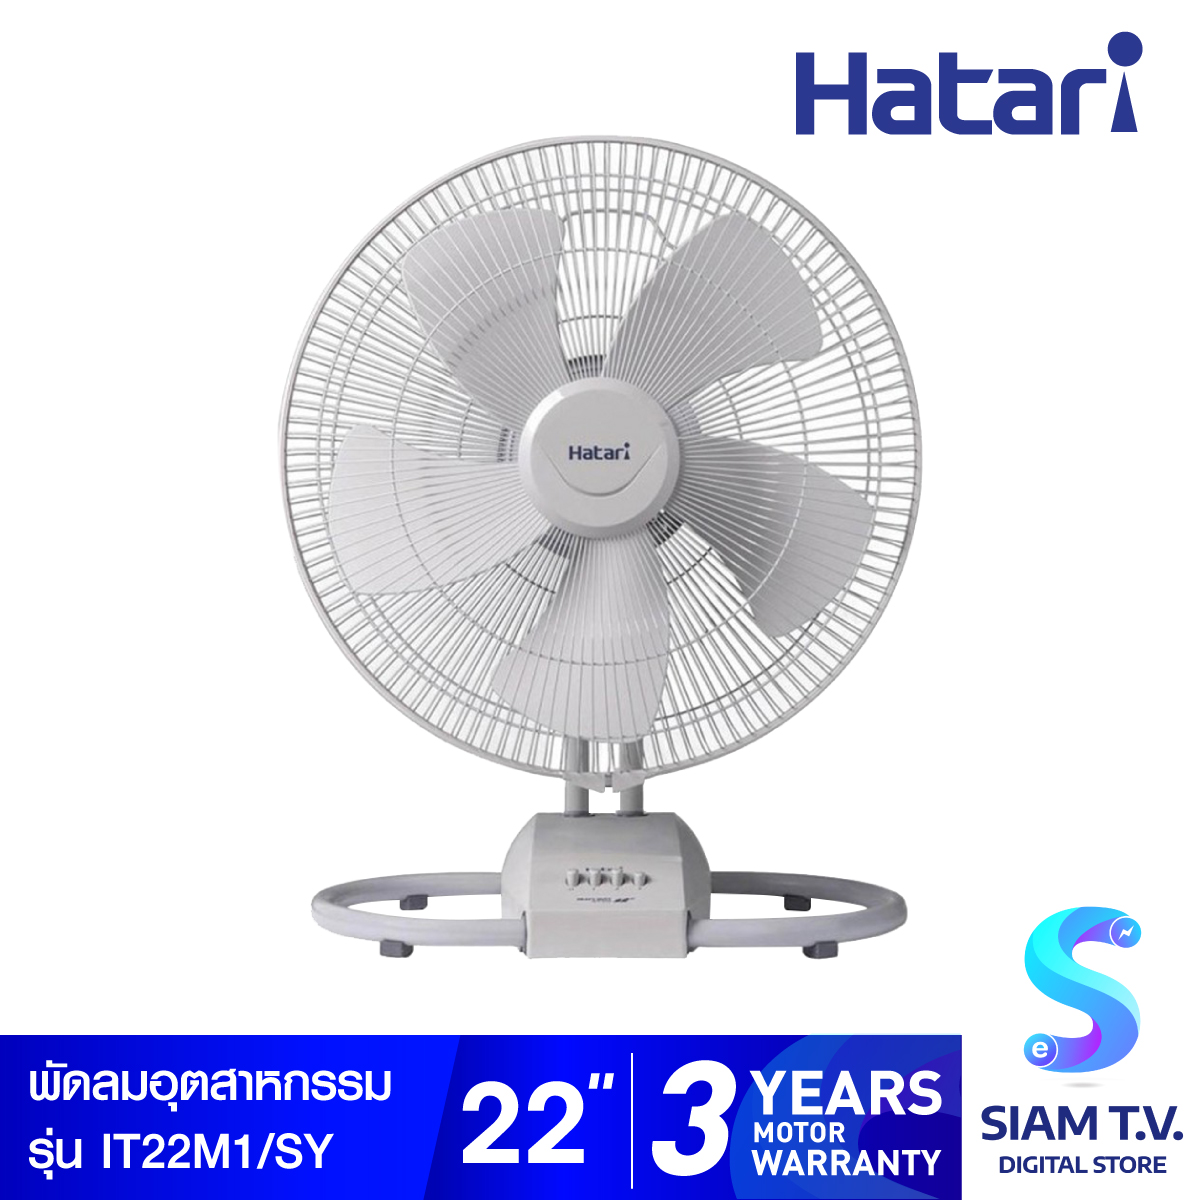 Hatari พัดลมอุตสาหกรรมตั้งโต๊ะ 22 นิ้ว รุ่น IT22M1 โดย สยามทีวี by Siam T.V.